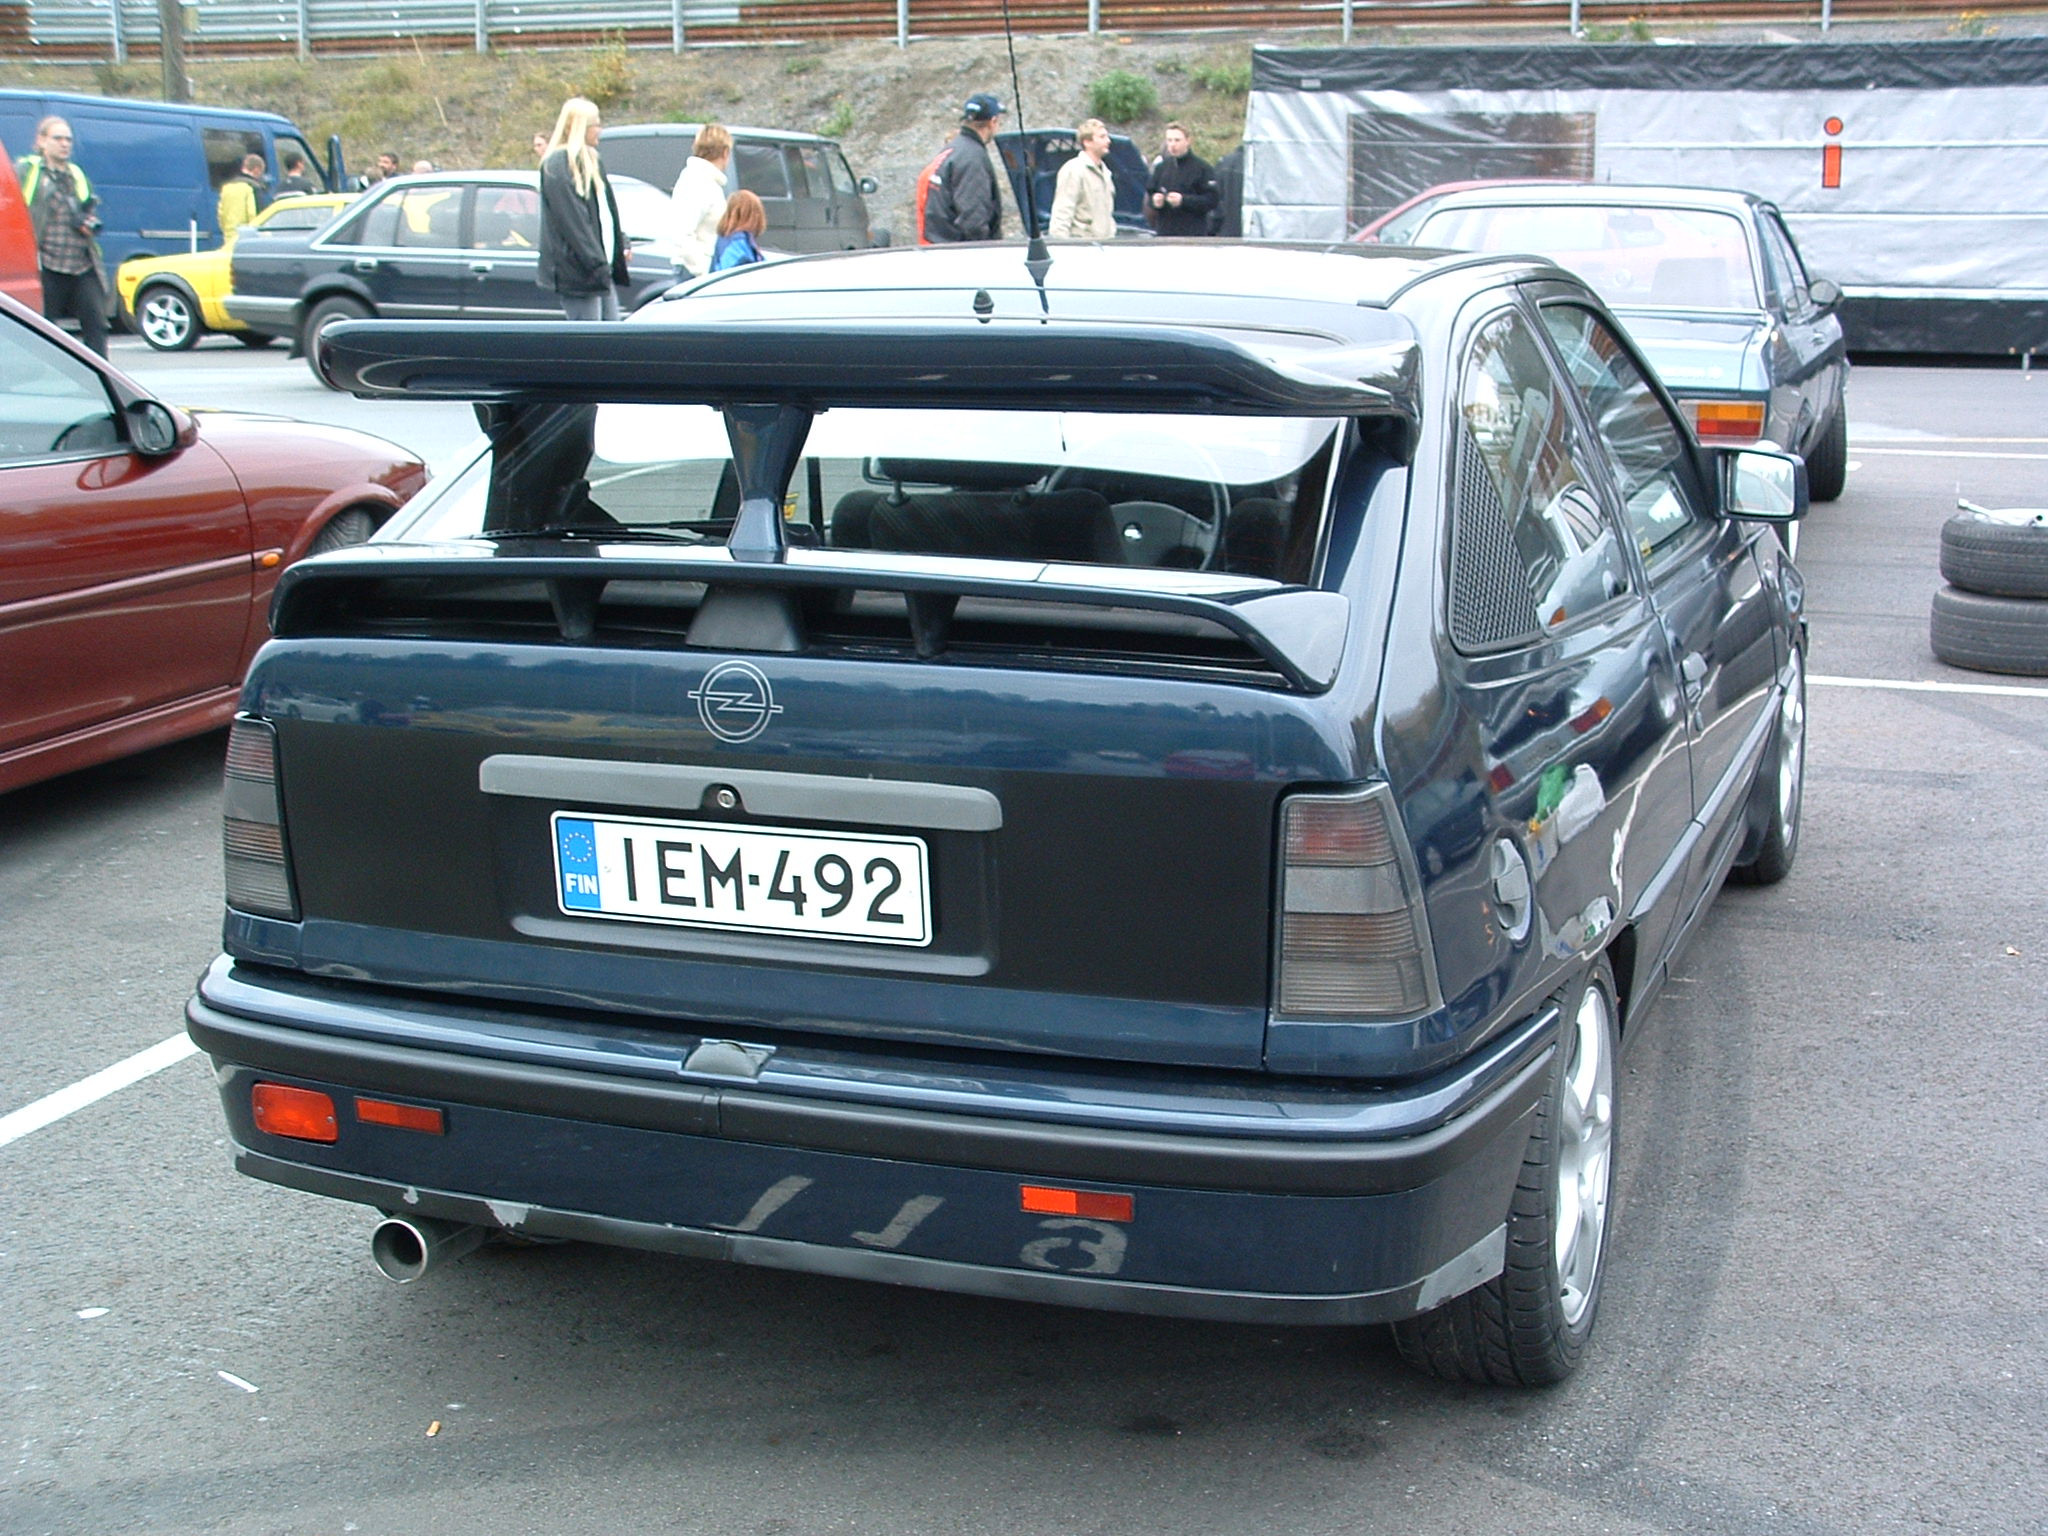 Radalle.com ratapÃ¤ivÃ¤ 3.10.2004, Sininen Opel Kadett E Cossu-Sierran takasiivellÃ¤?